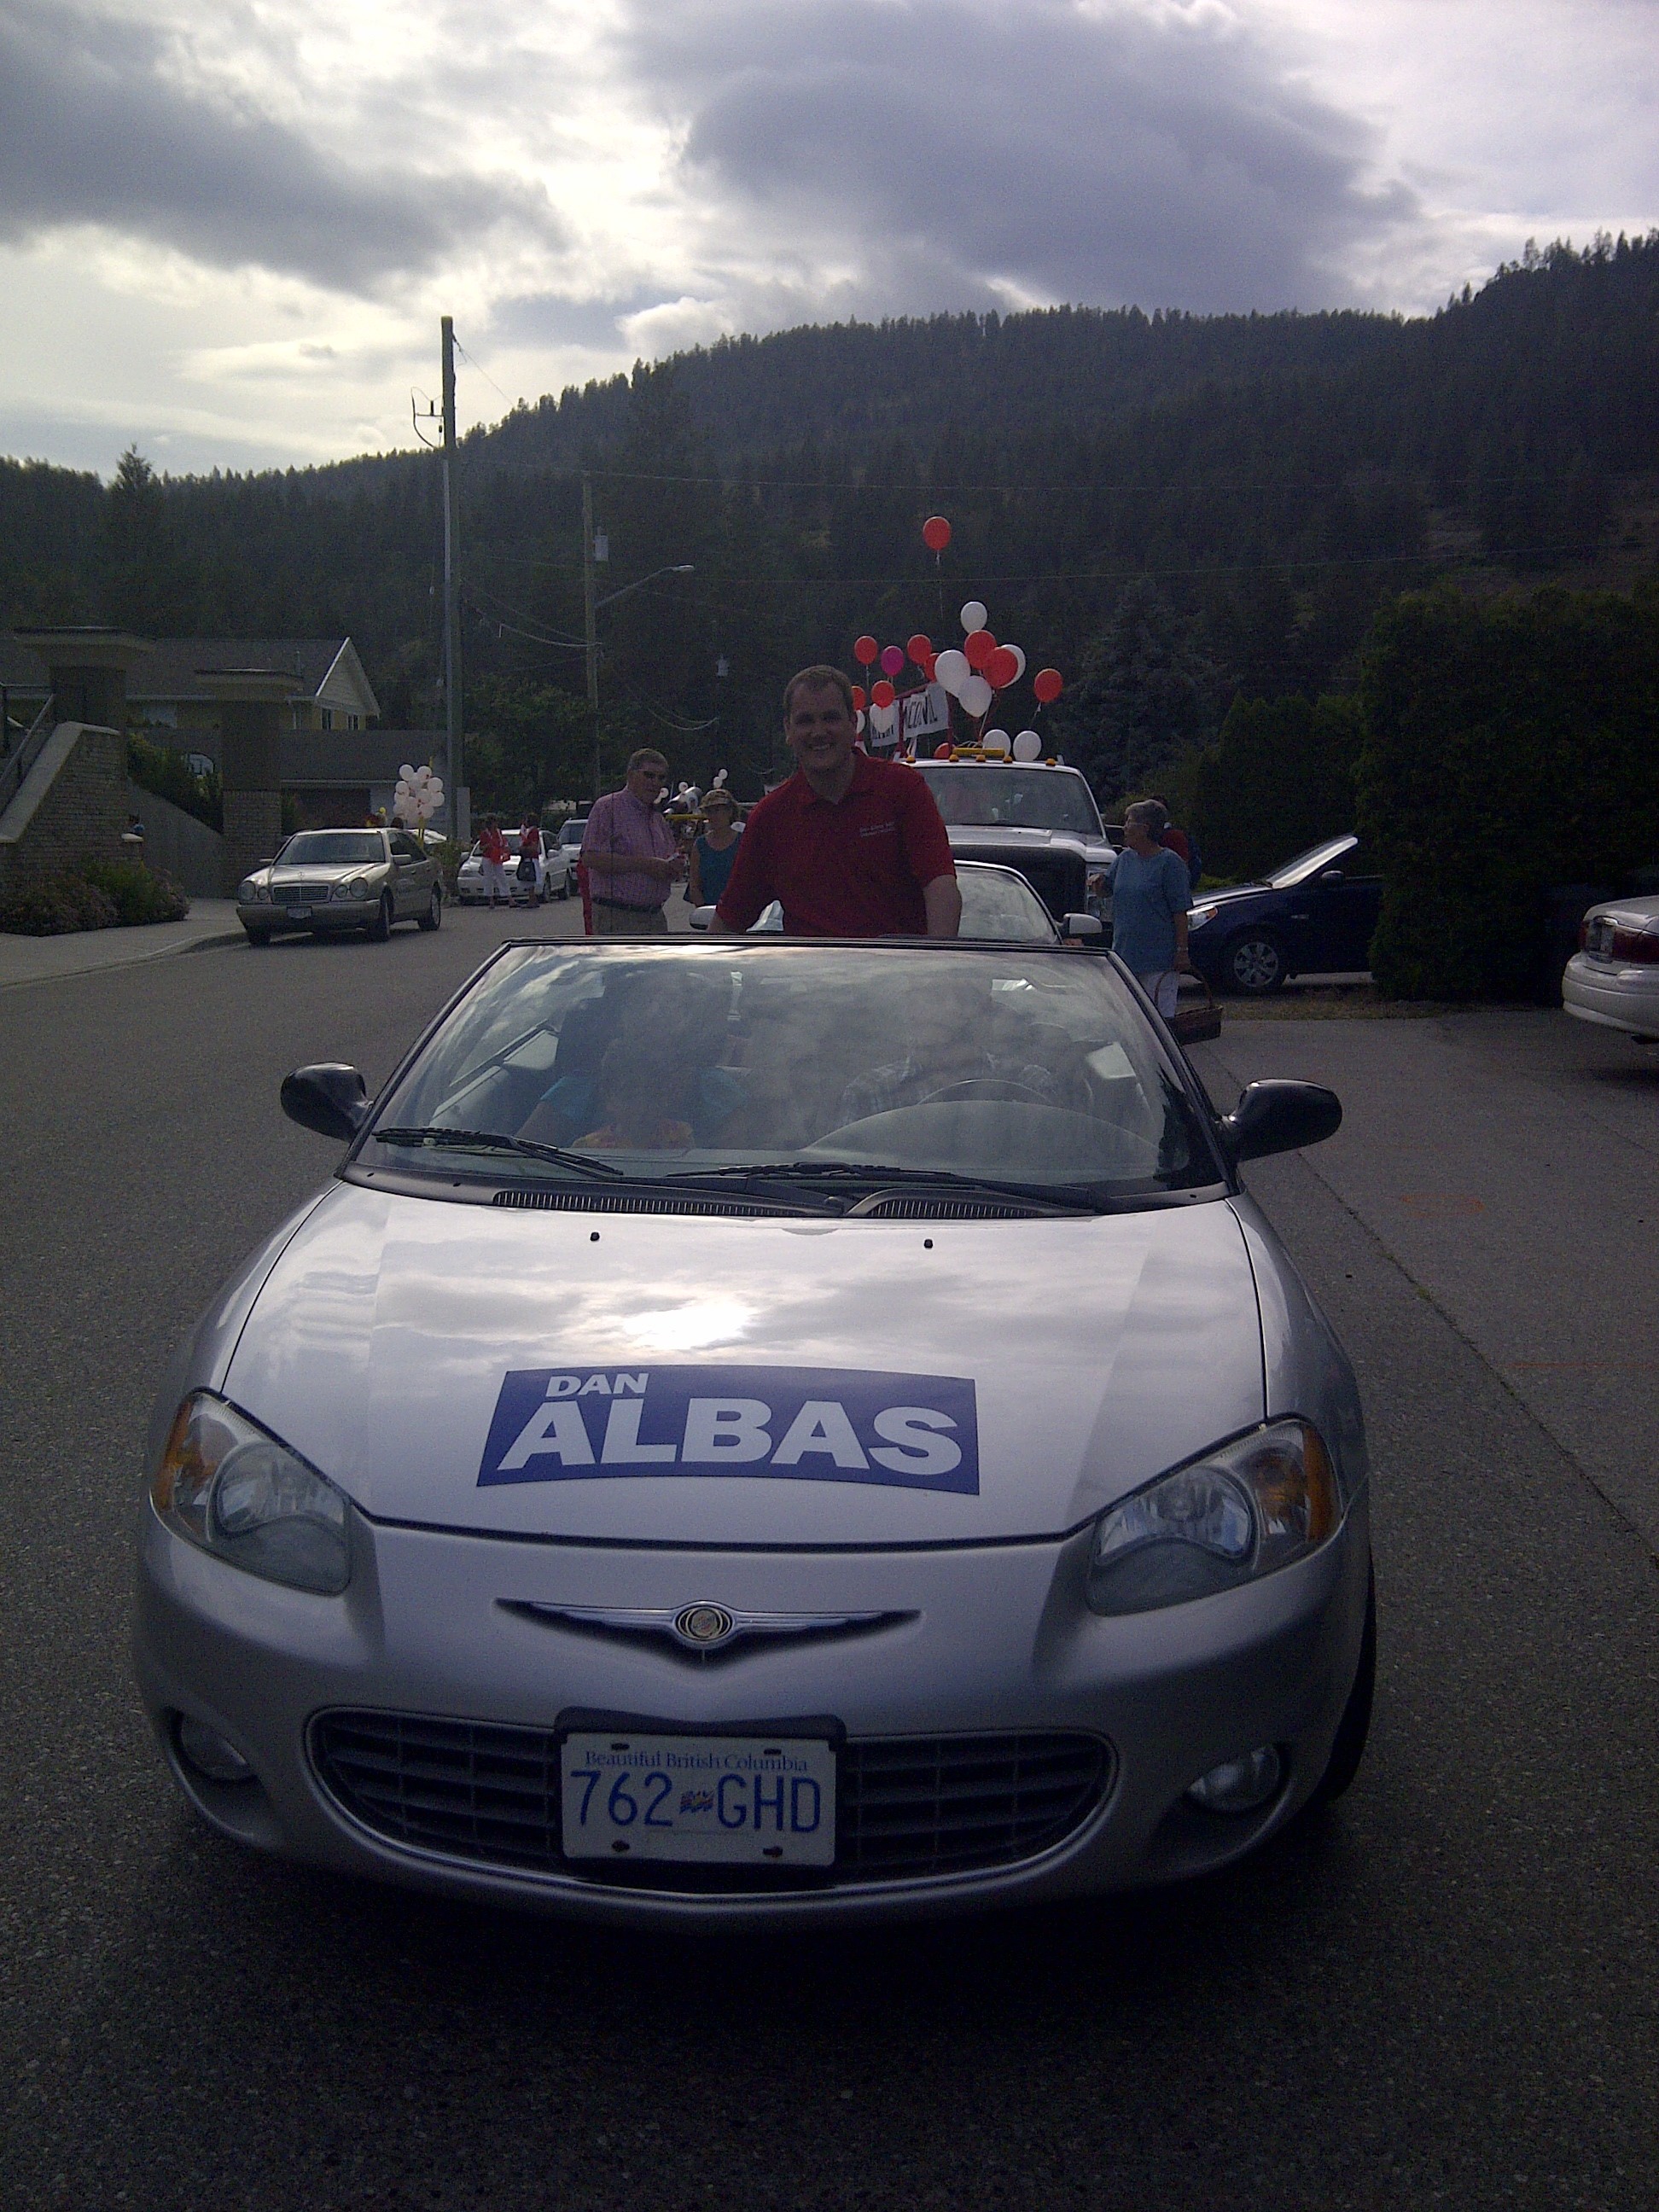 Canada+day+parade+kelowna+2011